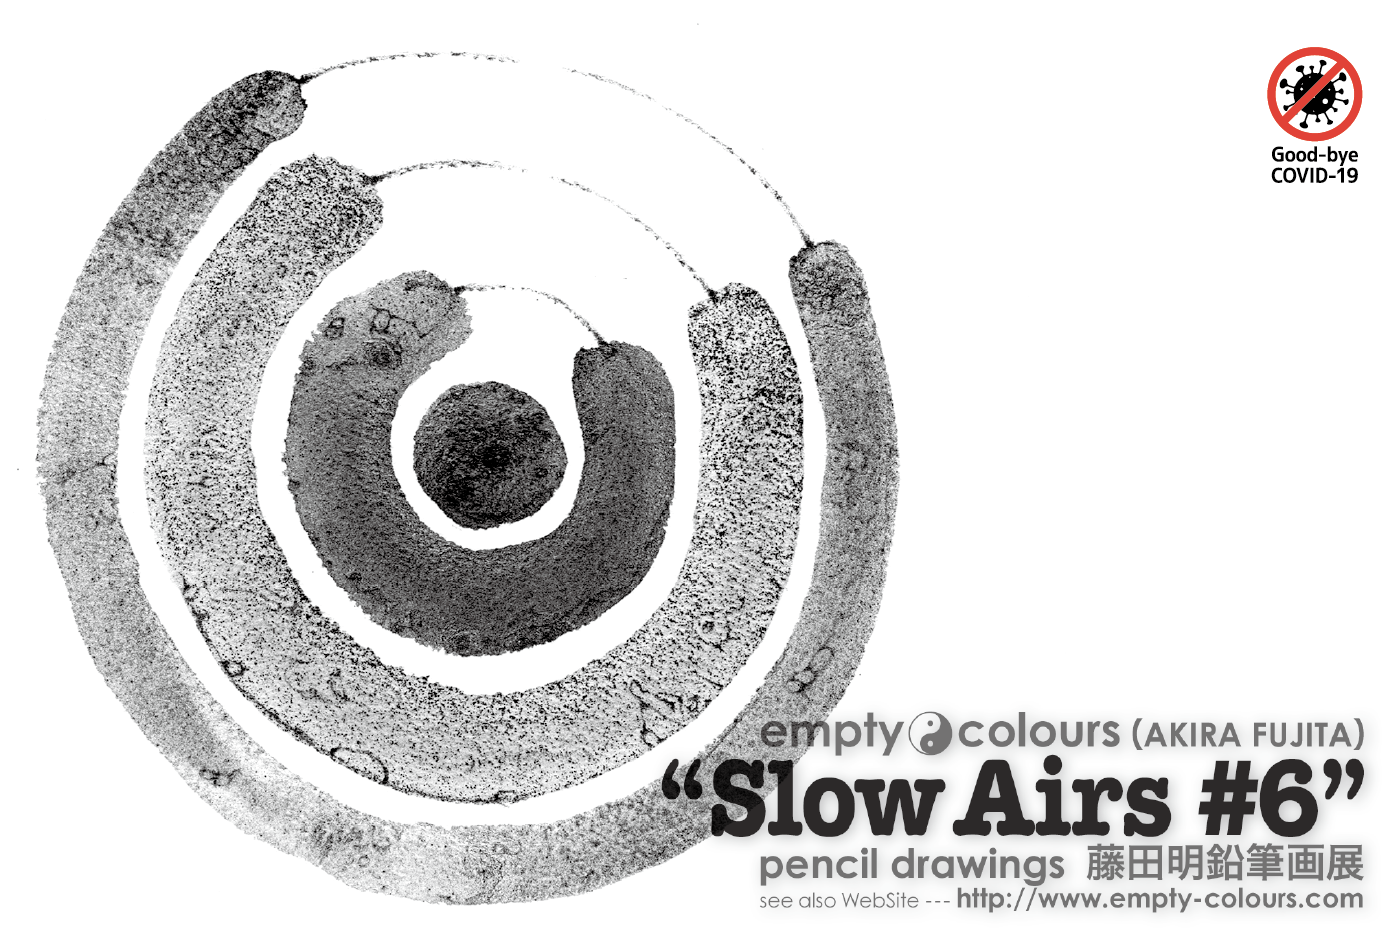 藤田明 鉛筆画個展 "Slow Airs #6" DMハガキ